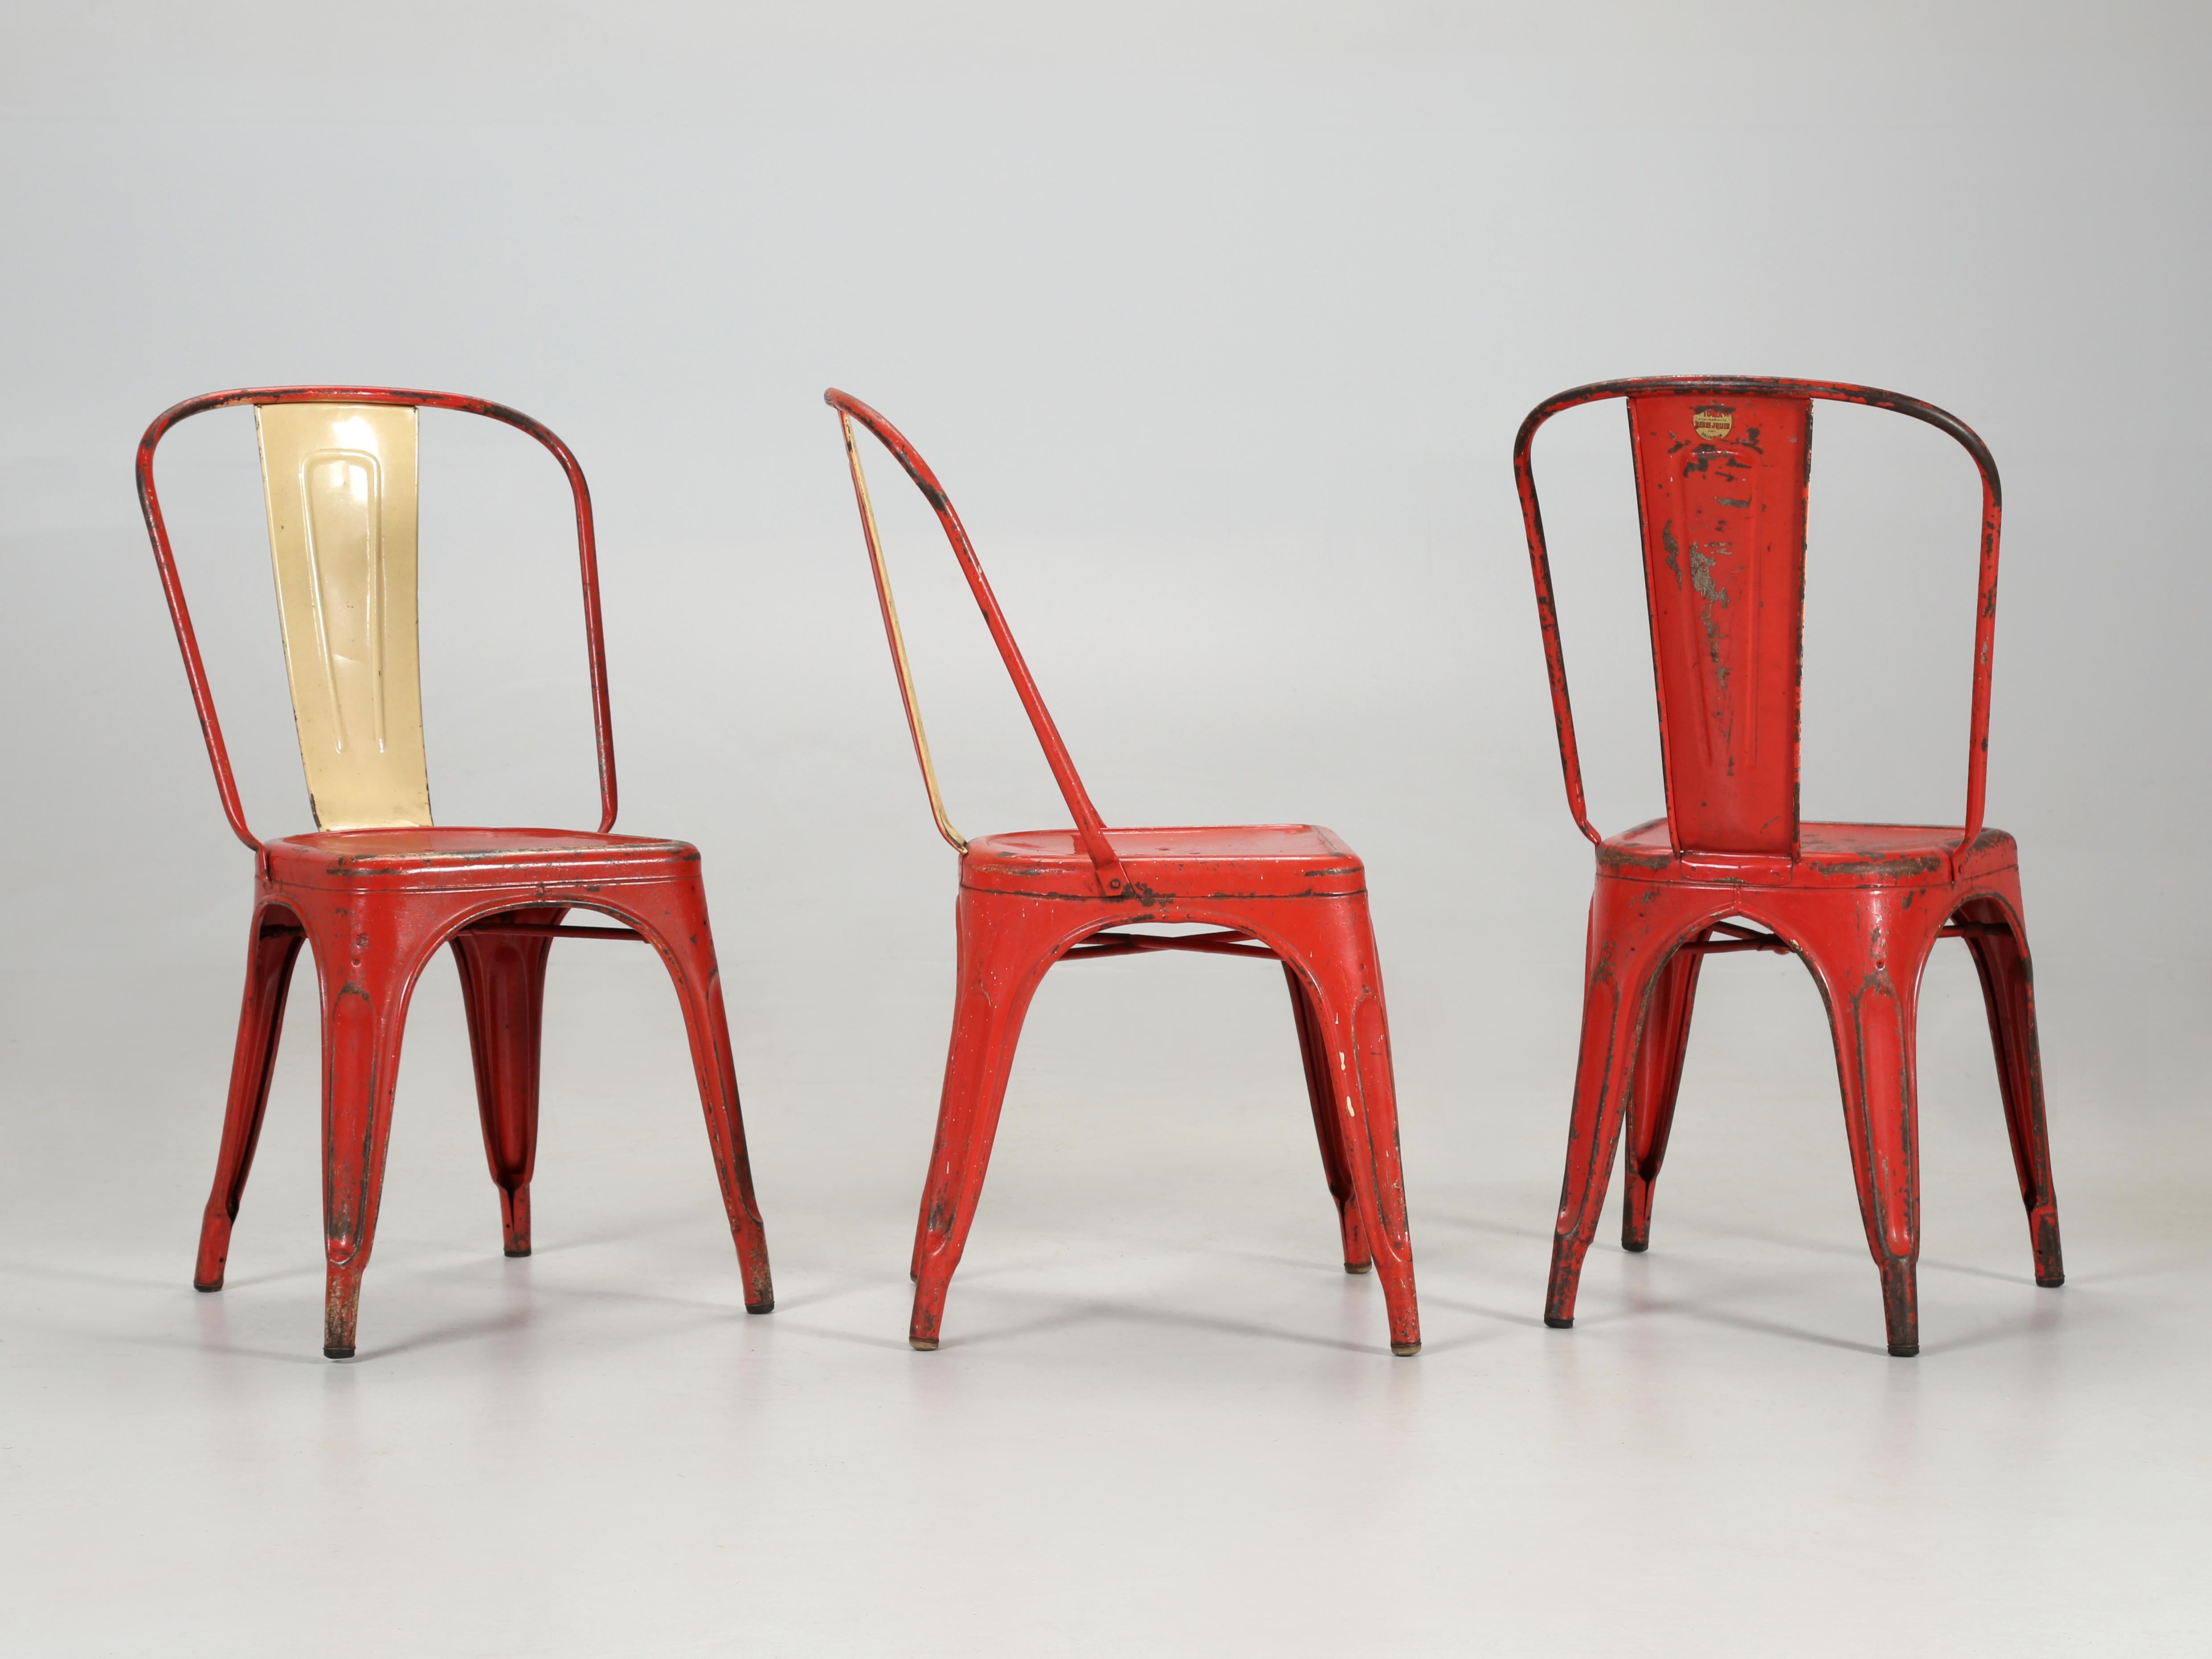 Les chaises de cuisine Tolix (empilables) et leurs tabourets assortis (également en stock) sont considérés comme un design emblématique et ont été exposés au Musée d'art moderne de New York, au Vitra Design Museum en Allemagne et au Centre Pompidou